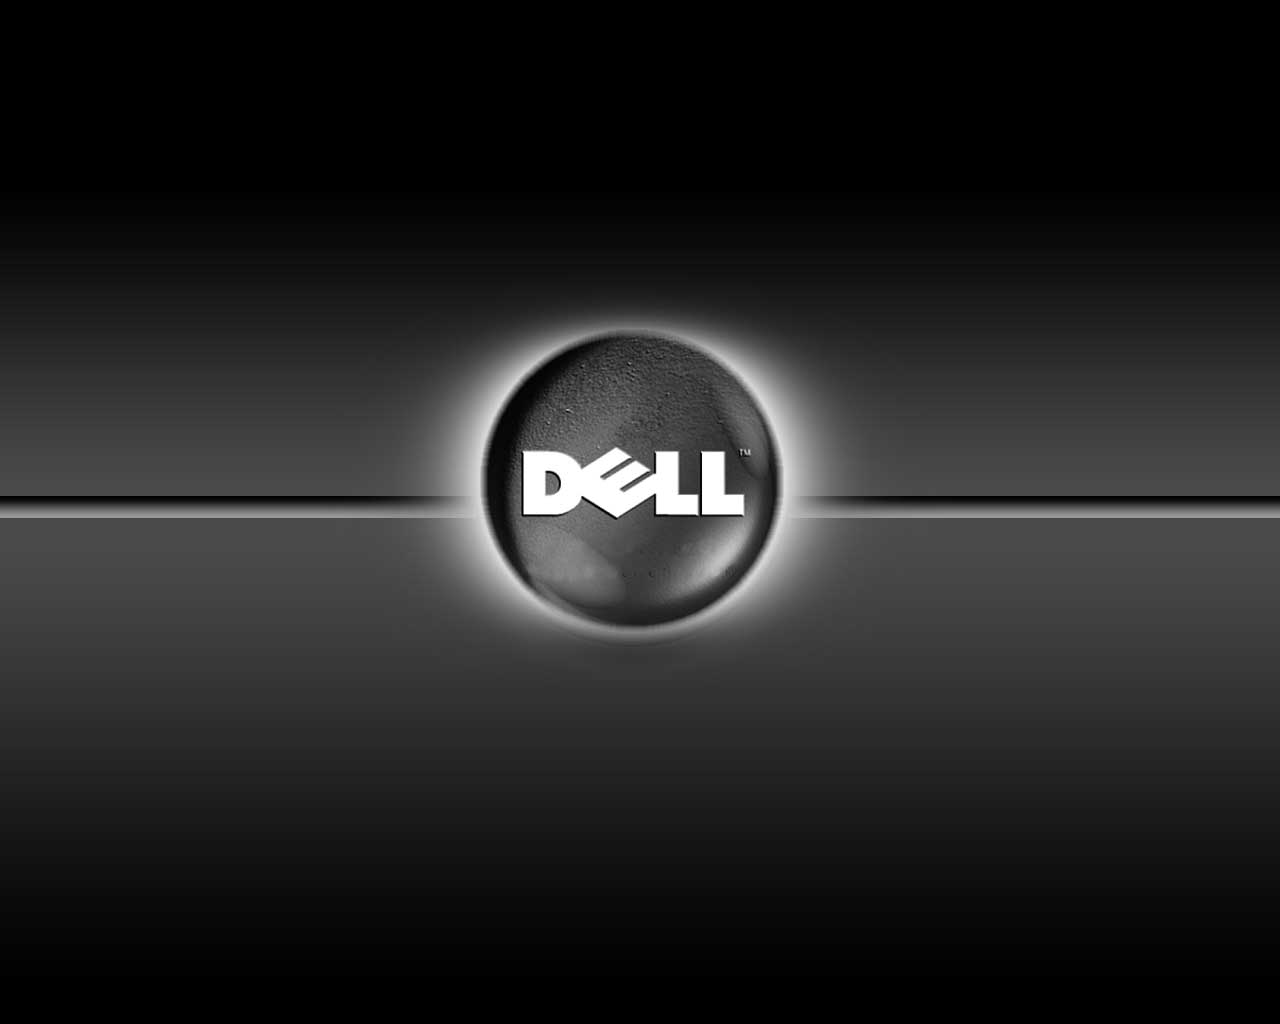 Dell Laptop Desktop Background | JunkInside